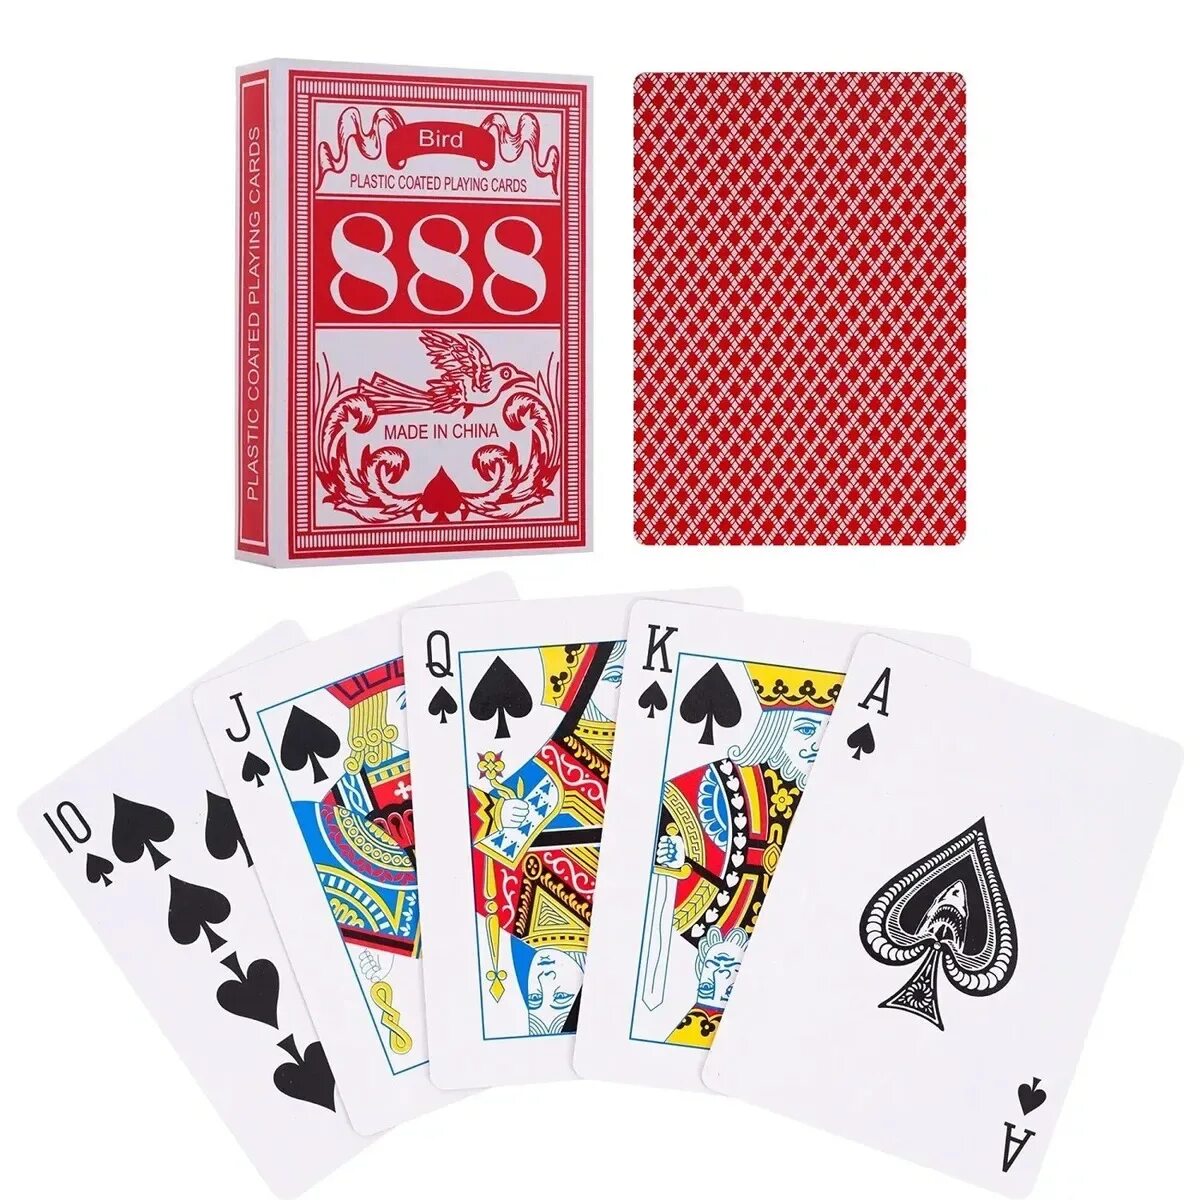 Игральные карты 888, Покер, пластик, 54 карт. Карты для покера Bird 888. Игральные карты Bird 888. Игральные карты Покер колода.